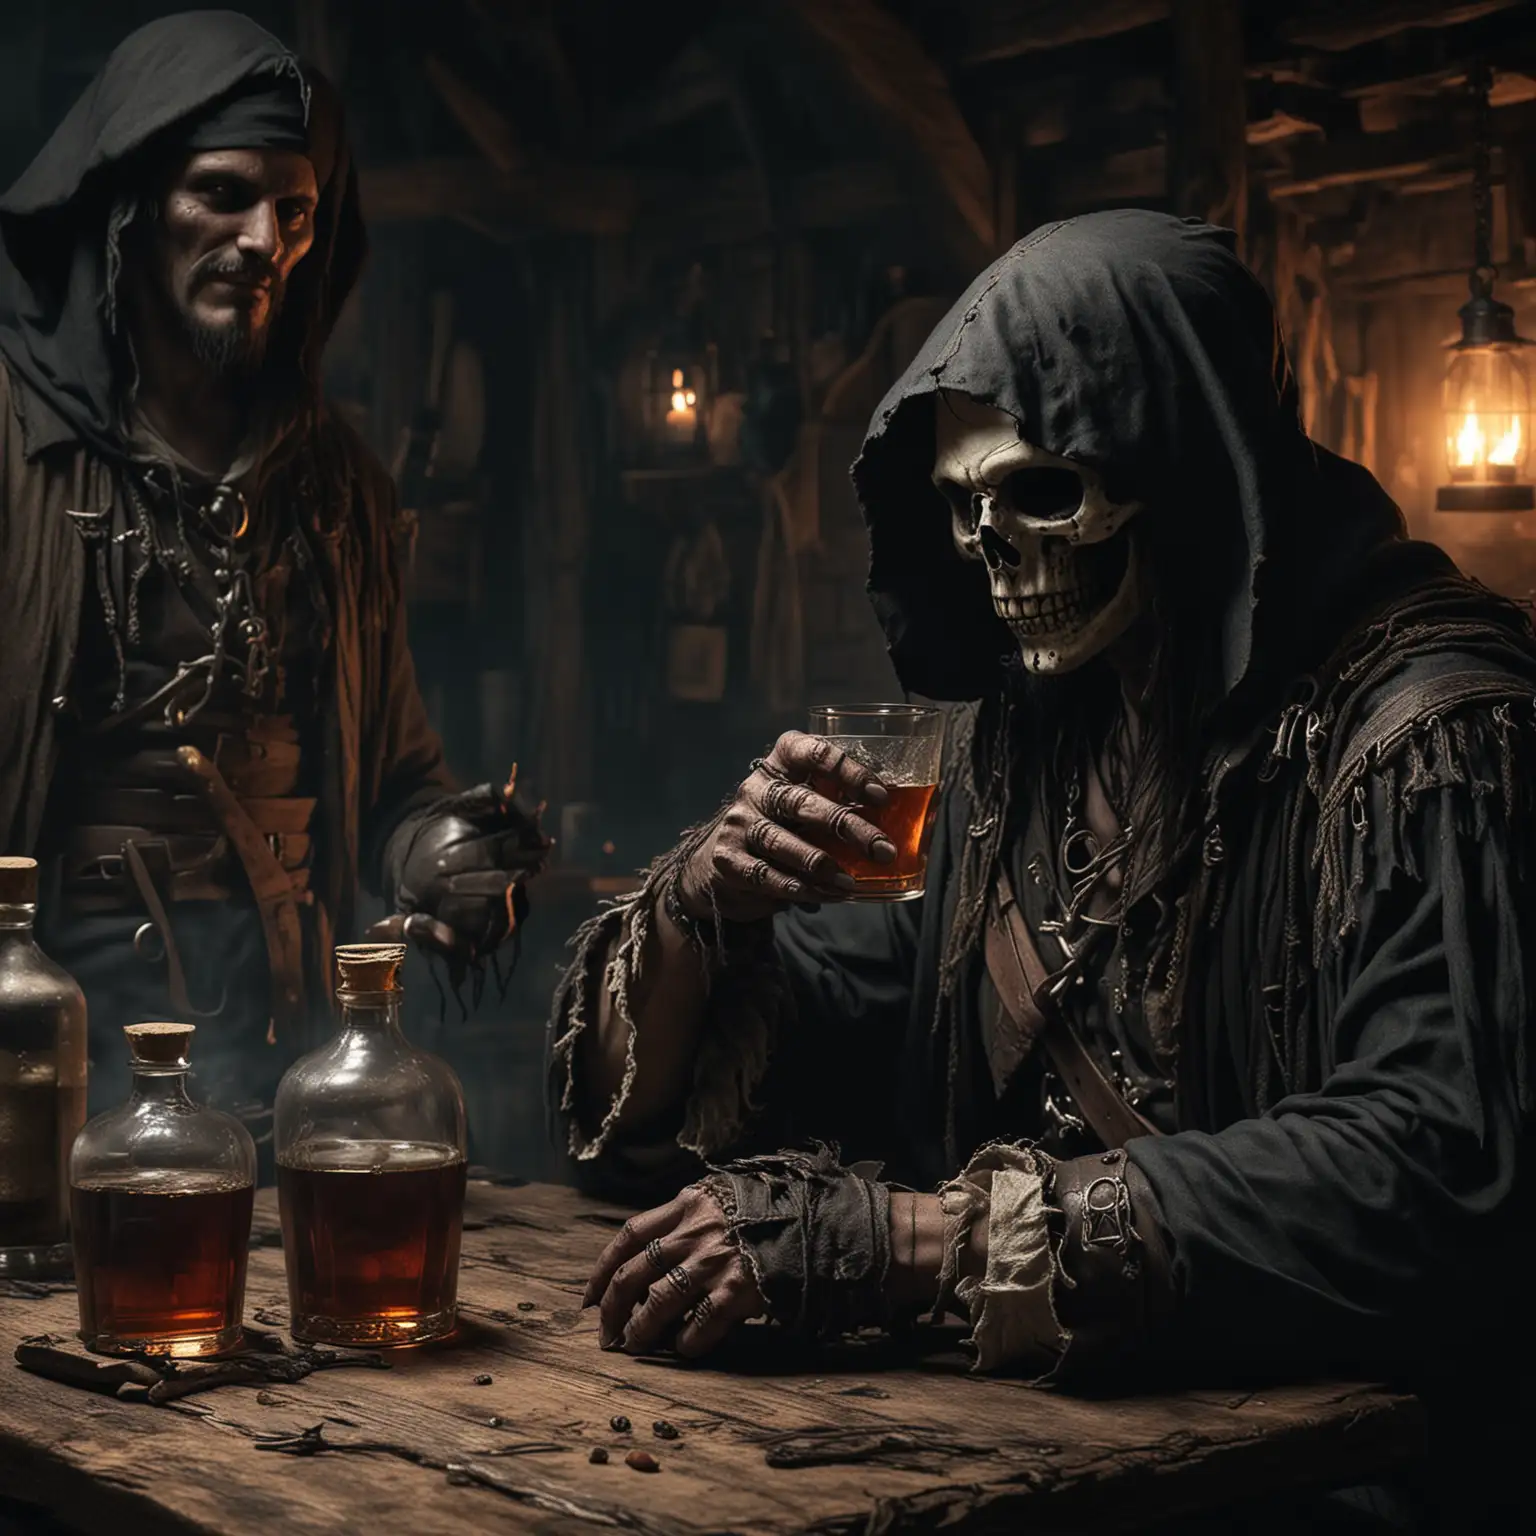 Mittelalterliche Taverne. Dunkel. Ein Pirat mit Gesicht und der Sensenmann mit Kapuze sitzen nebeneinander und trinken Rum. 